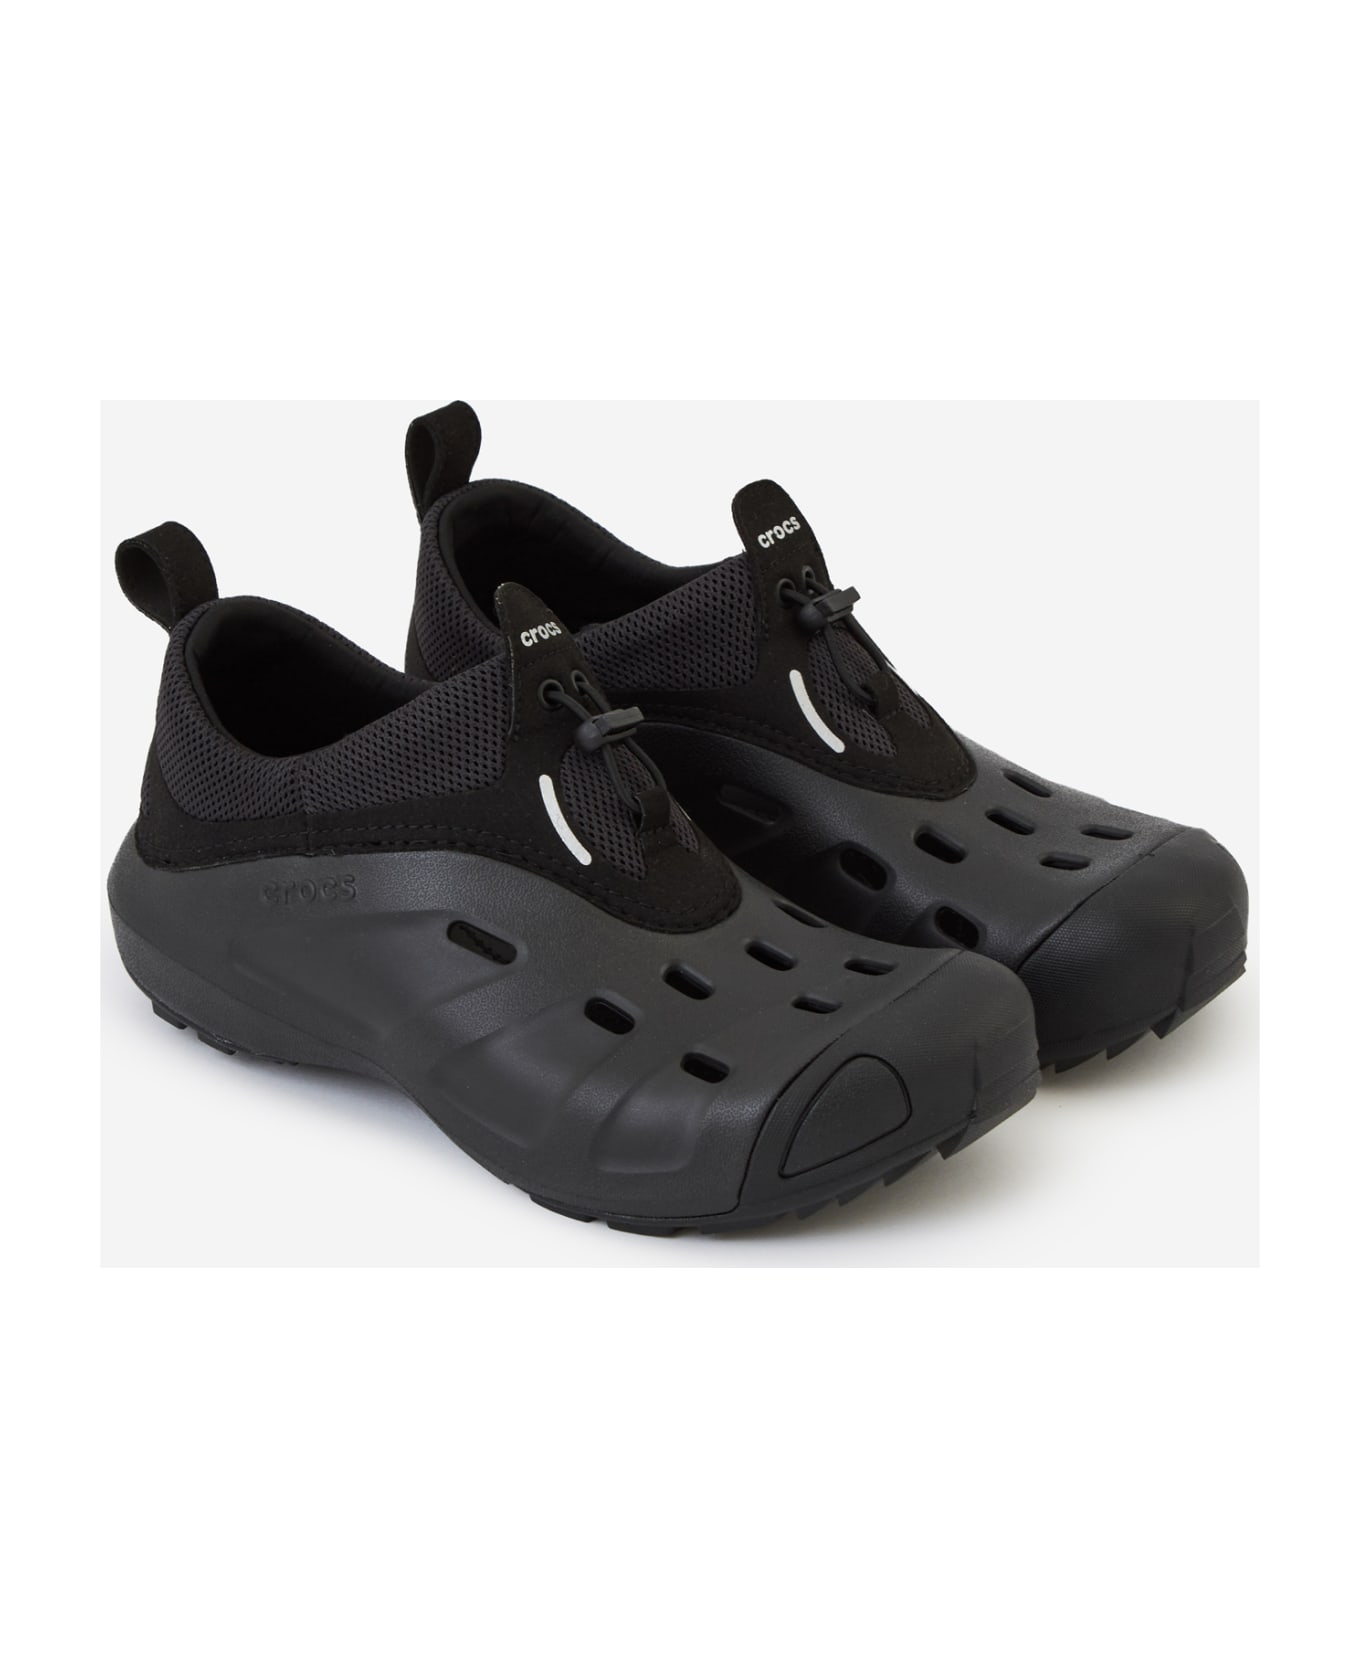 Crocs Quick Trail Low Shoes - black